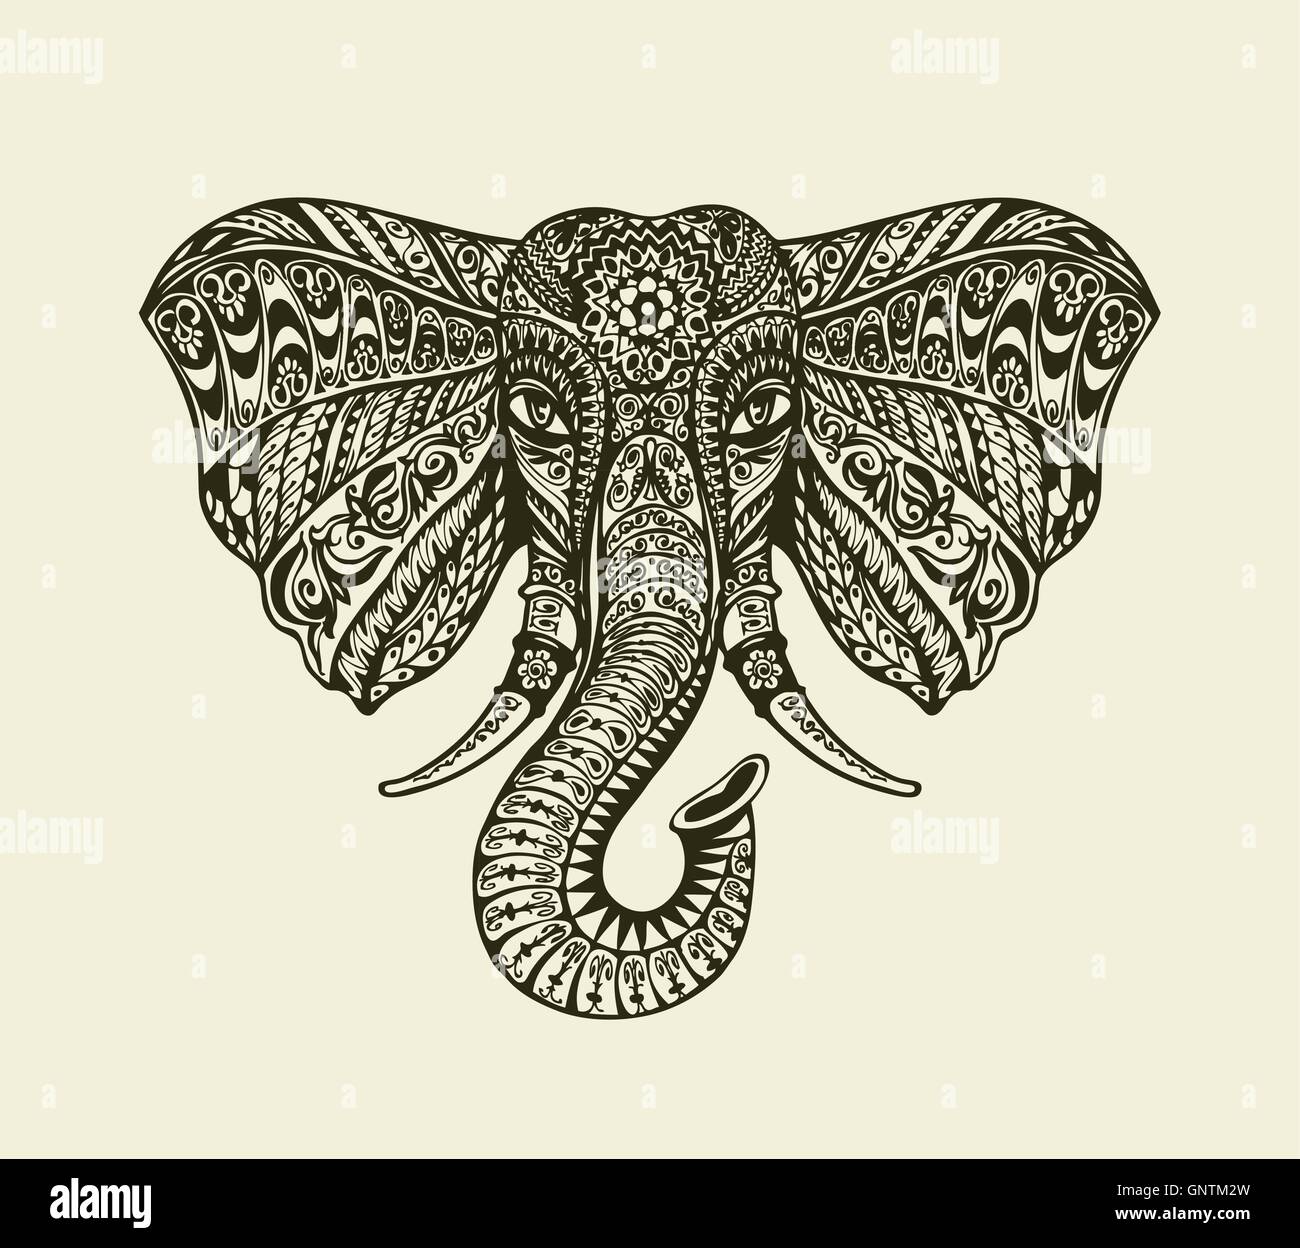 Vintage Grafik indischer Elefant. Florale Muster im Ethno-Stil. Vektor-illustration Stock Vektor